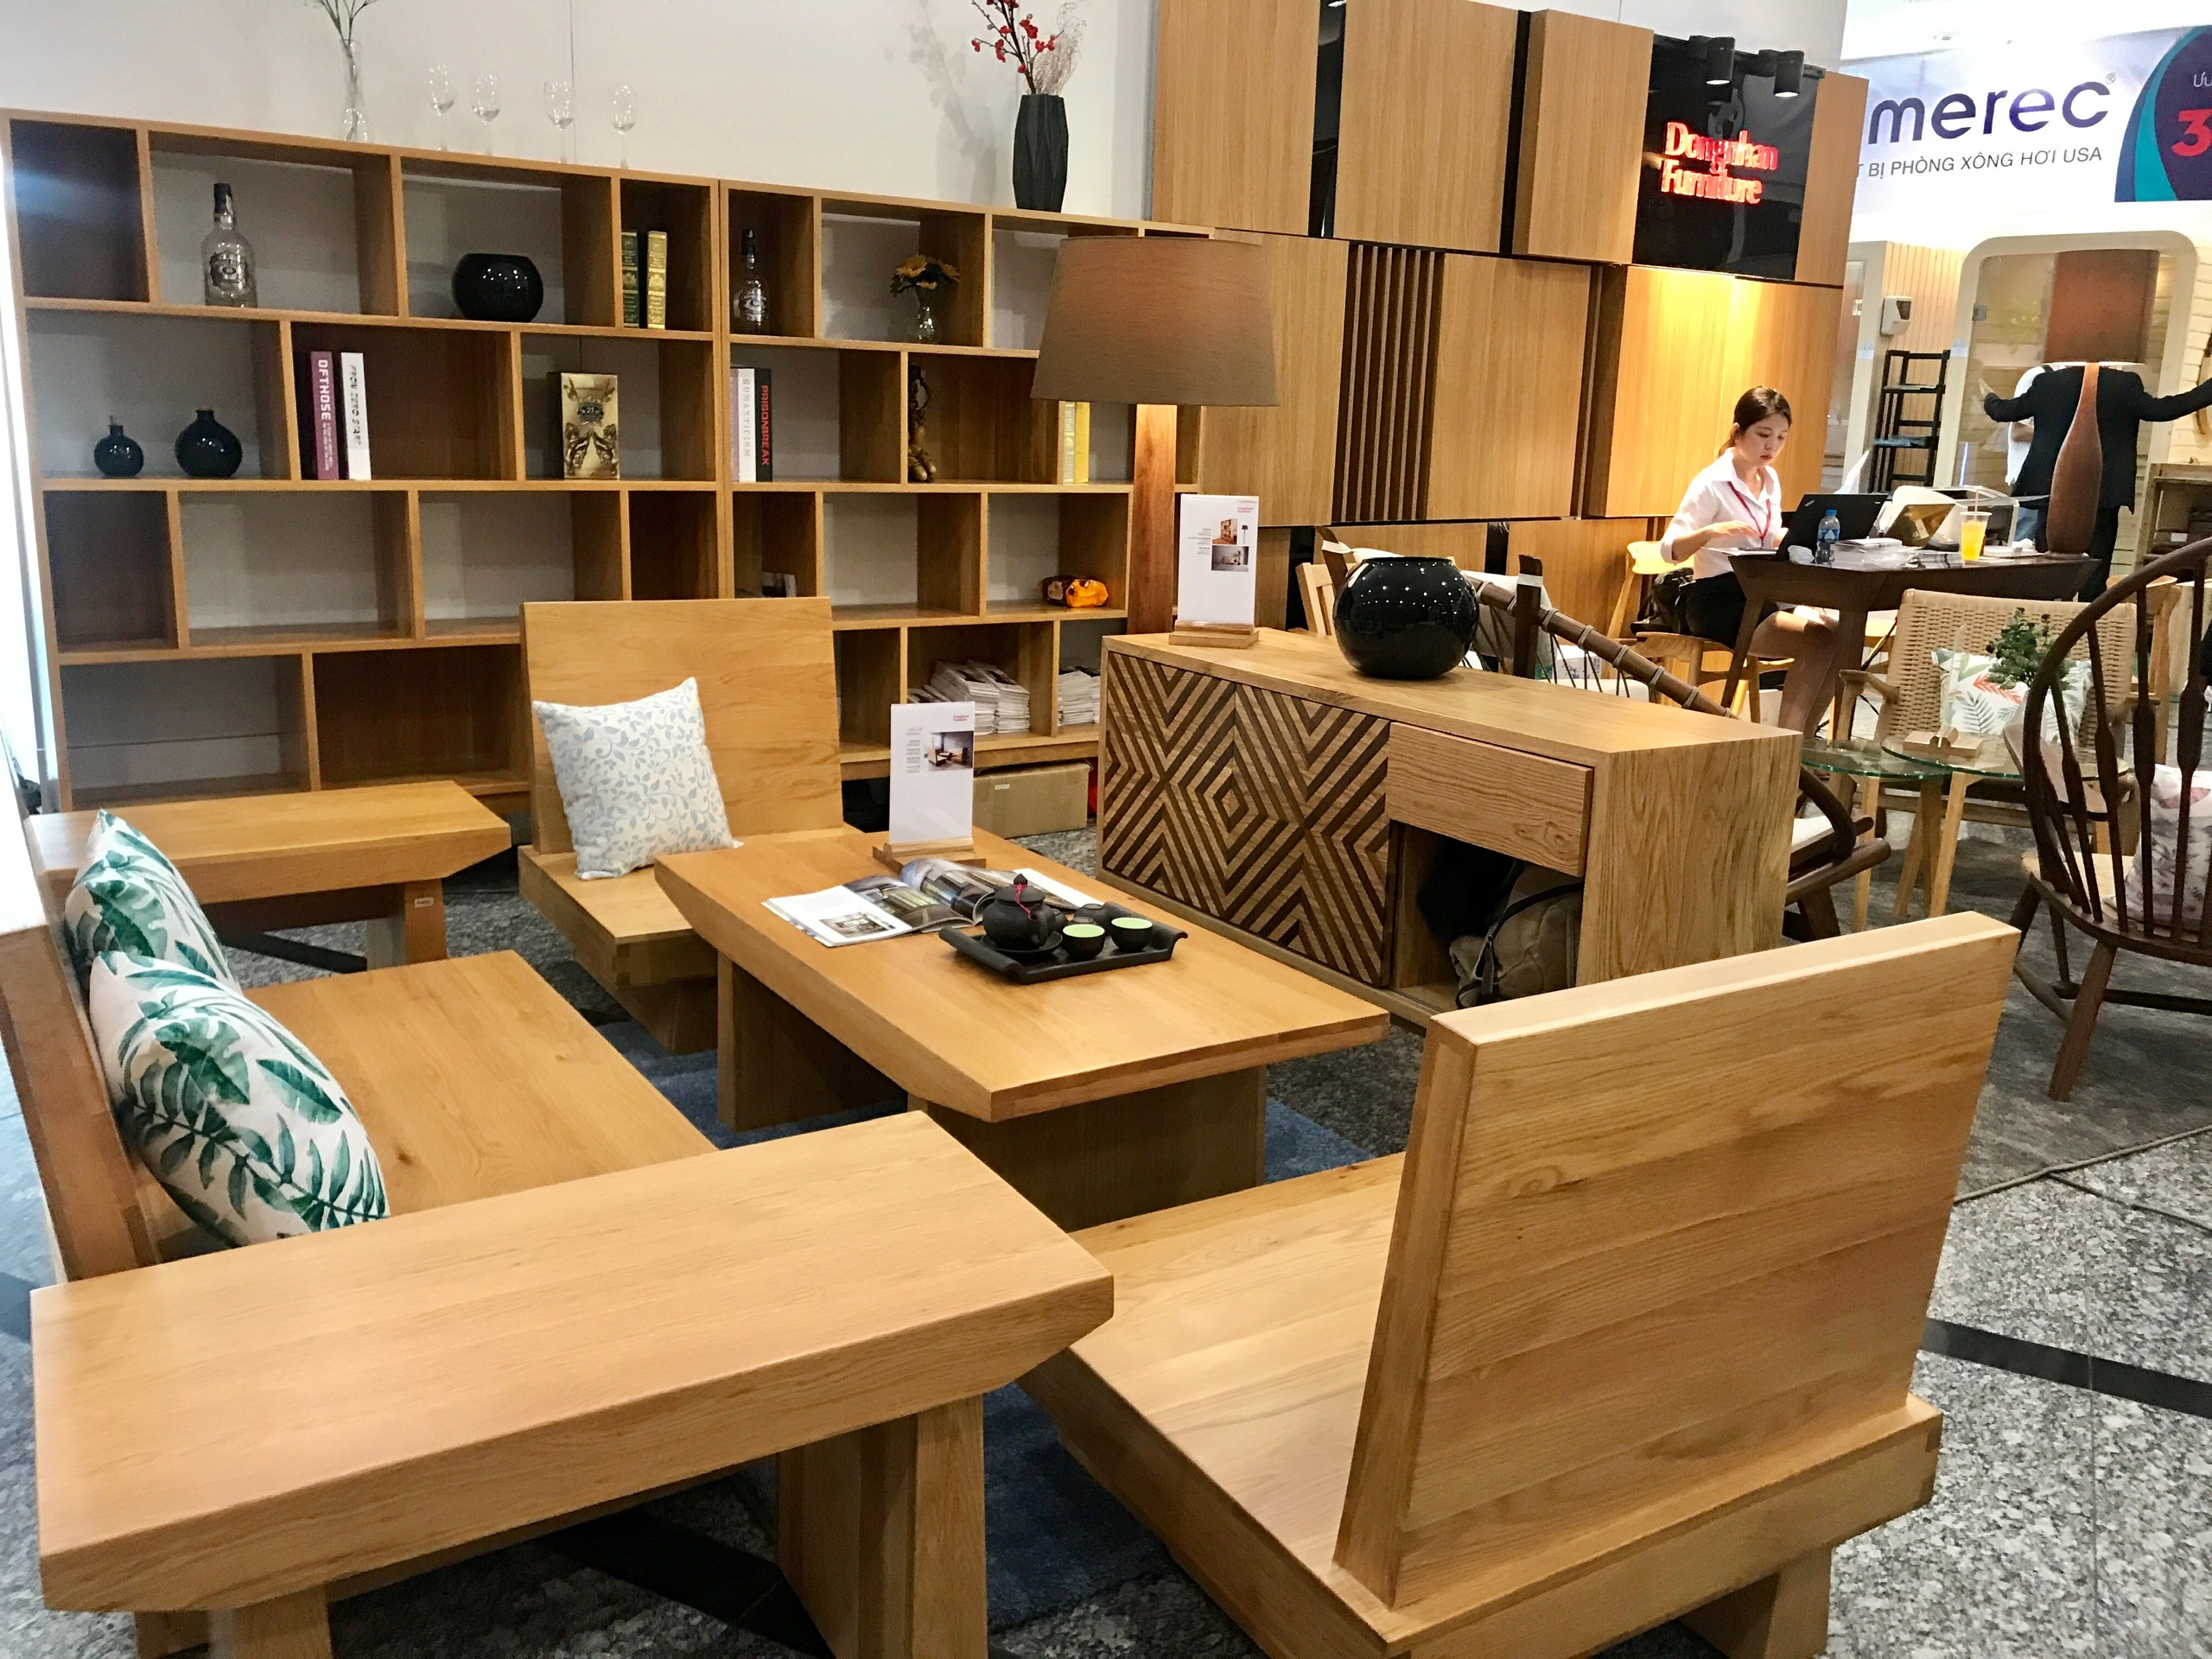 Xuất khẩu đồ nội thất gỗ Hàn Quốc: Đồ nội thất gỗ Hàn Quốc từ nay sẽ được xuất khẩu sang Việt Nam với chất lượng tốt nhất. Với những người yêu thích gỗ, đây là cơ hội để sở hữu những sản phẩm đẹp và chất lượng cao.